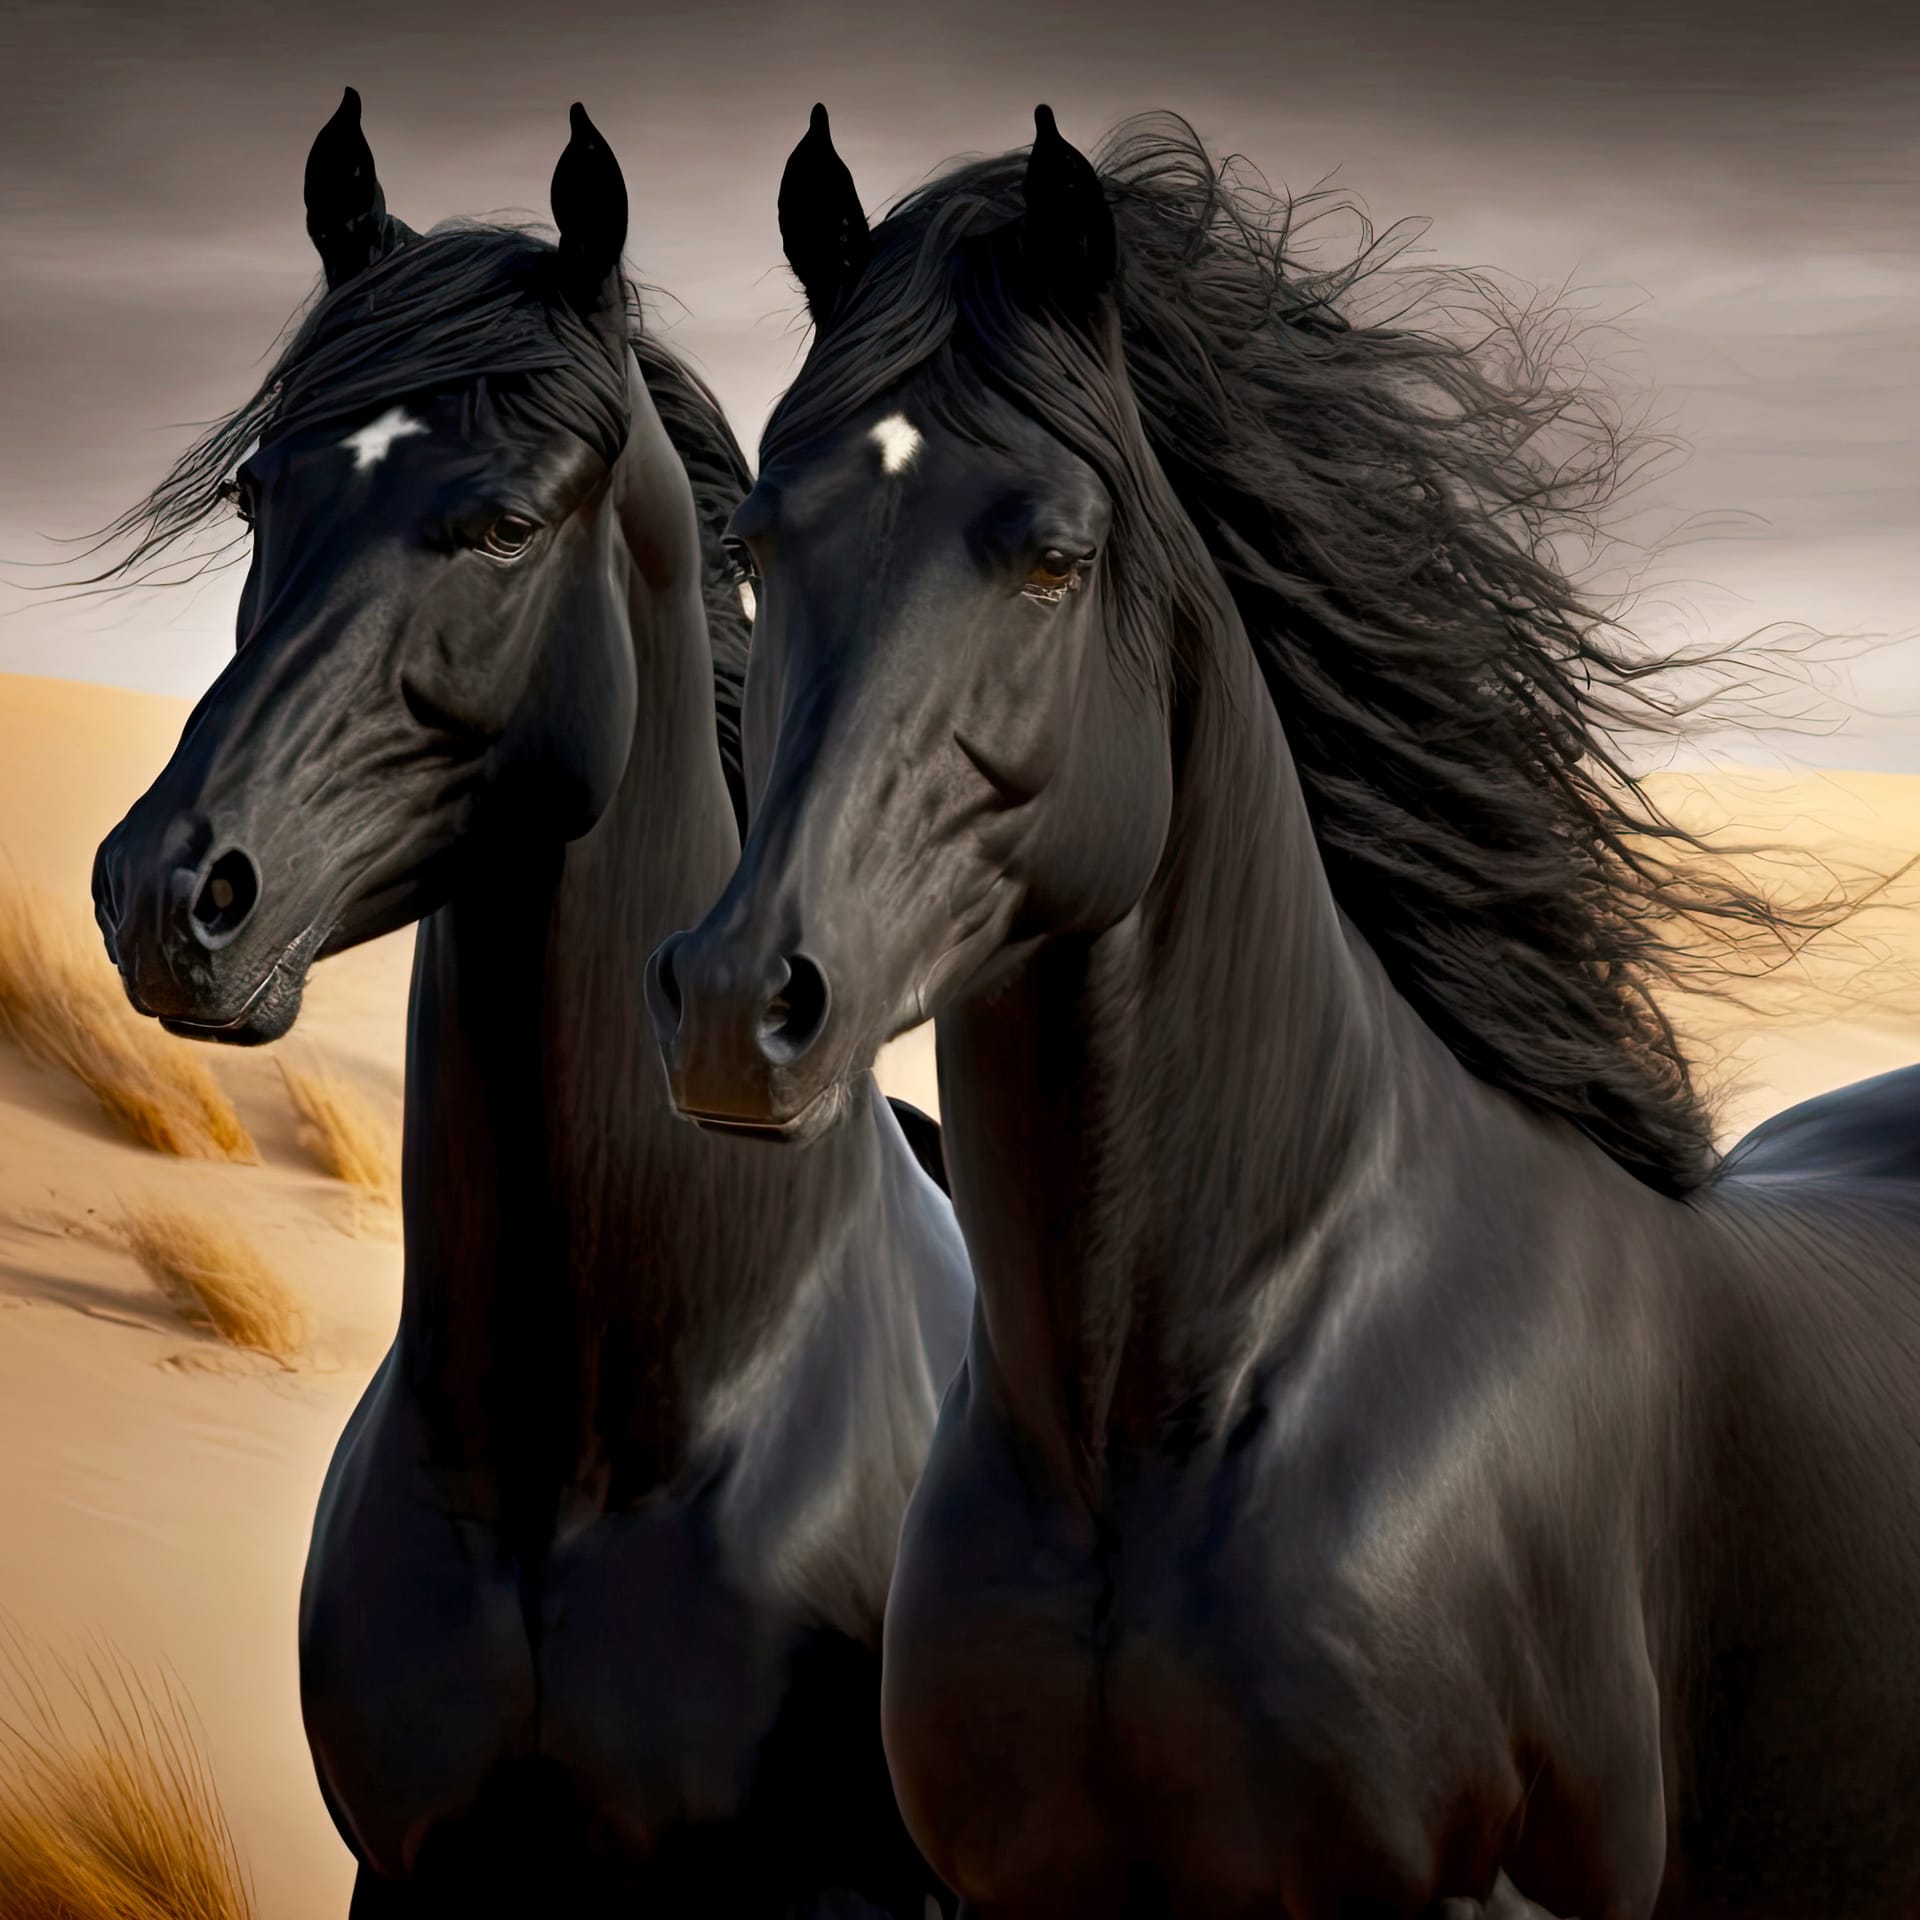 Pair slender black horse sand shore